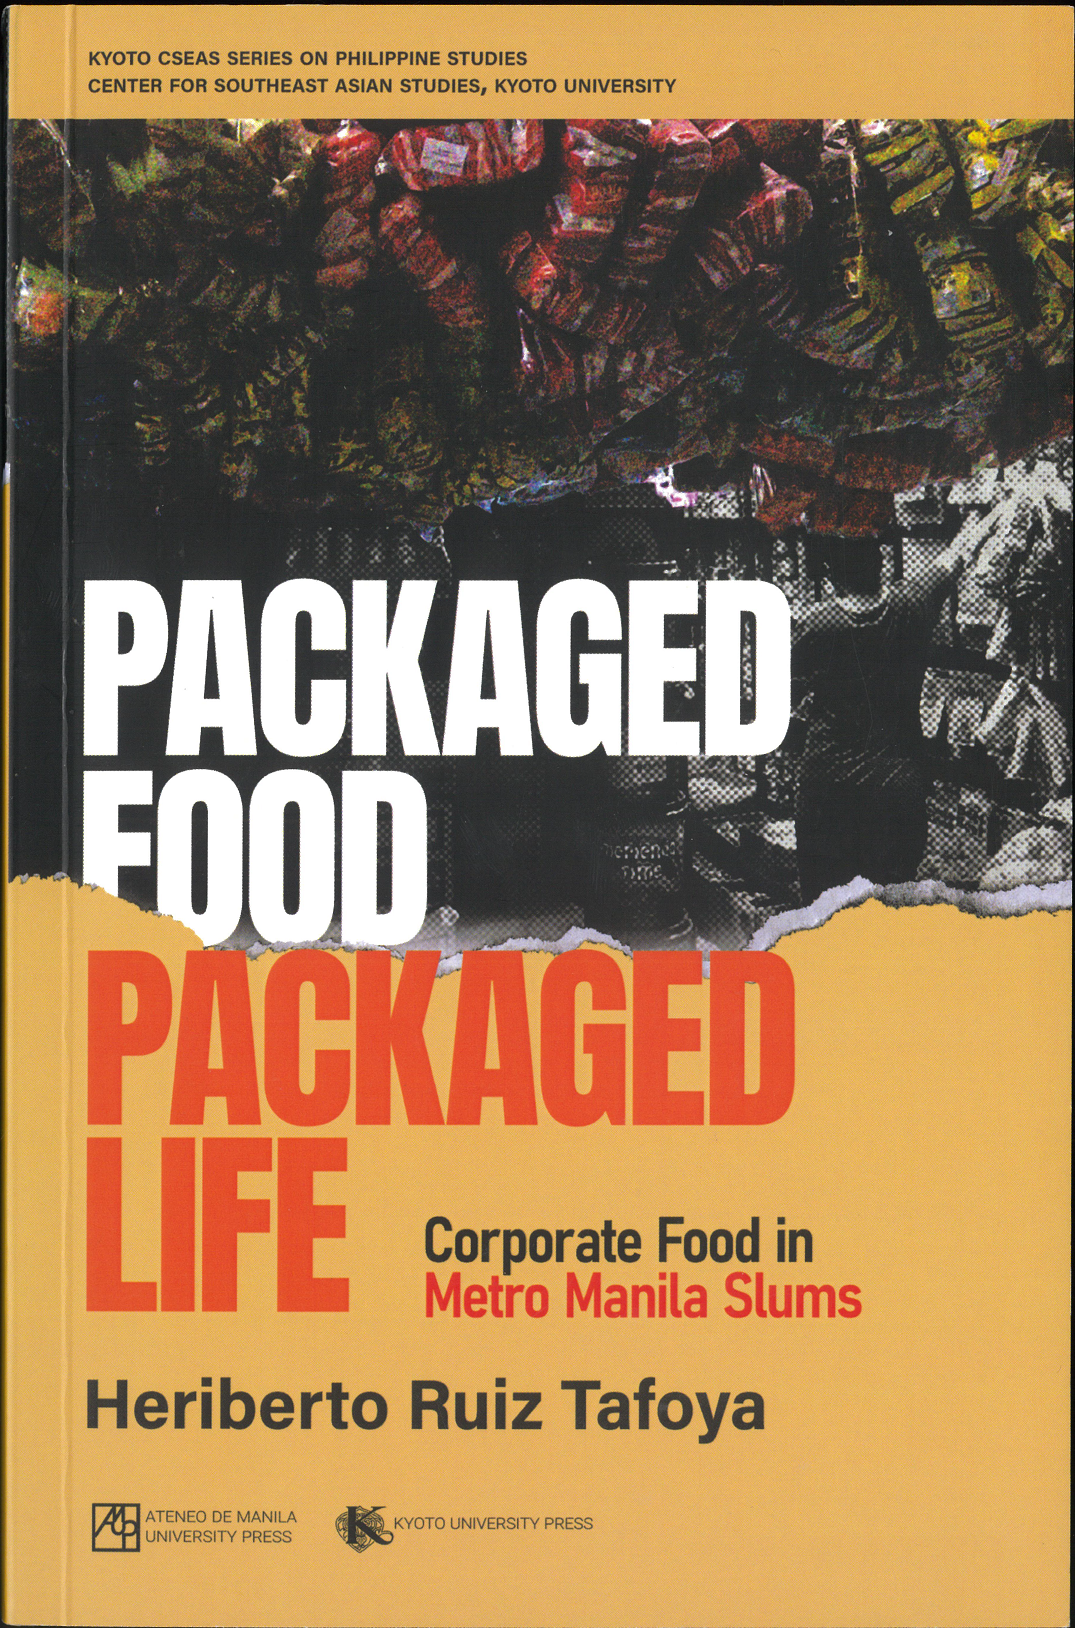 エリベルト・ルイス・タフォヤ "Packaged Food, Packaged Life: Corporate Food in Metro Manila's Slums"